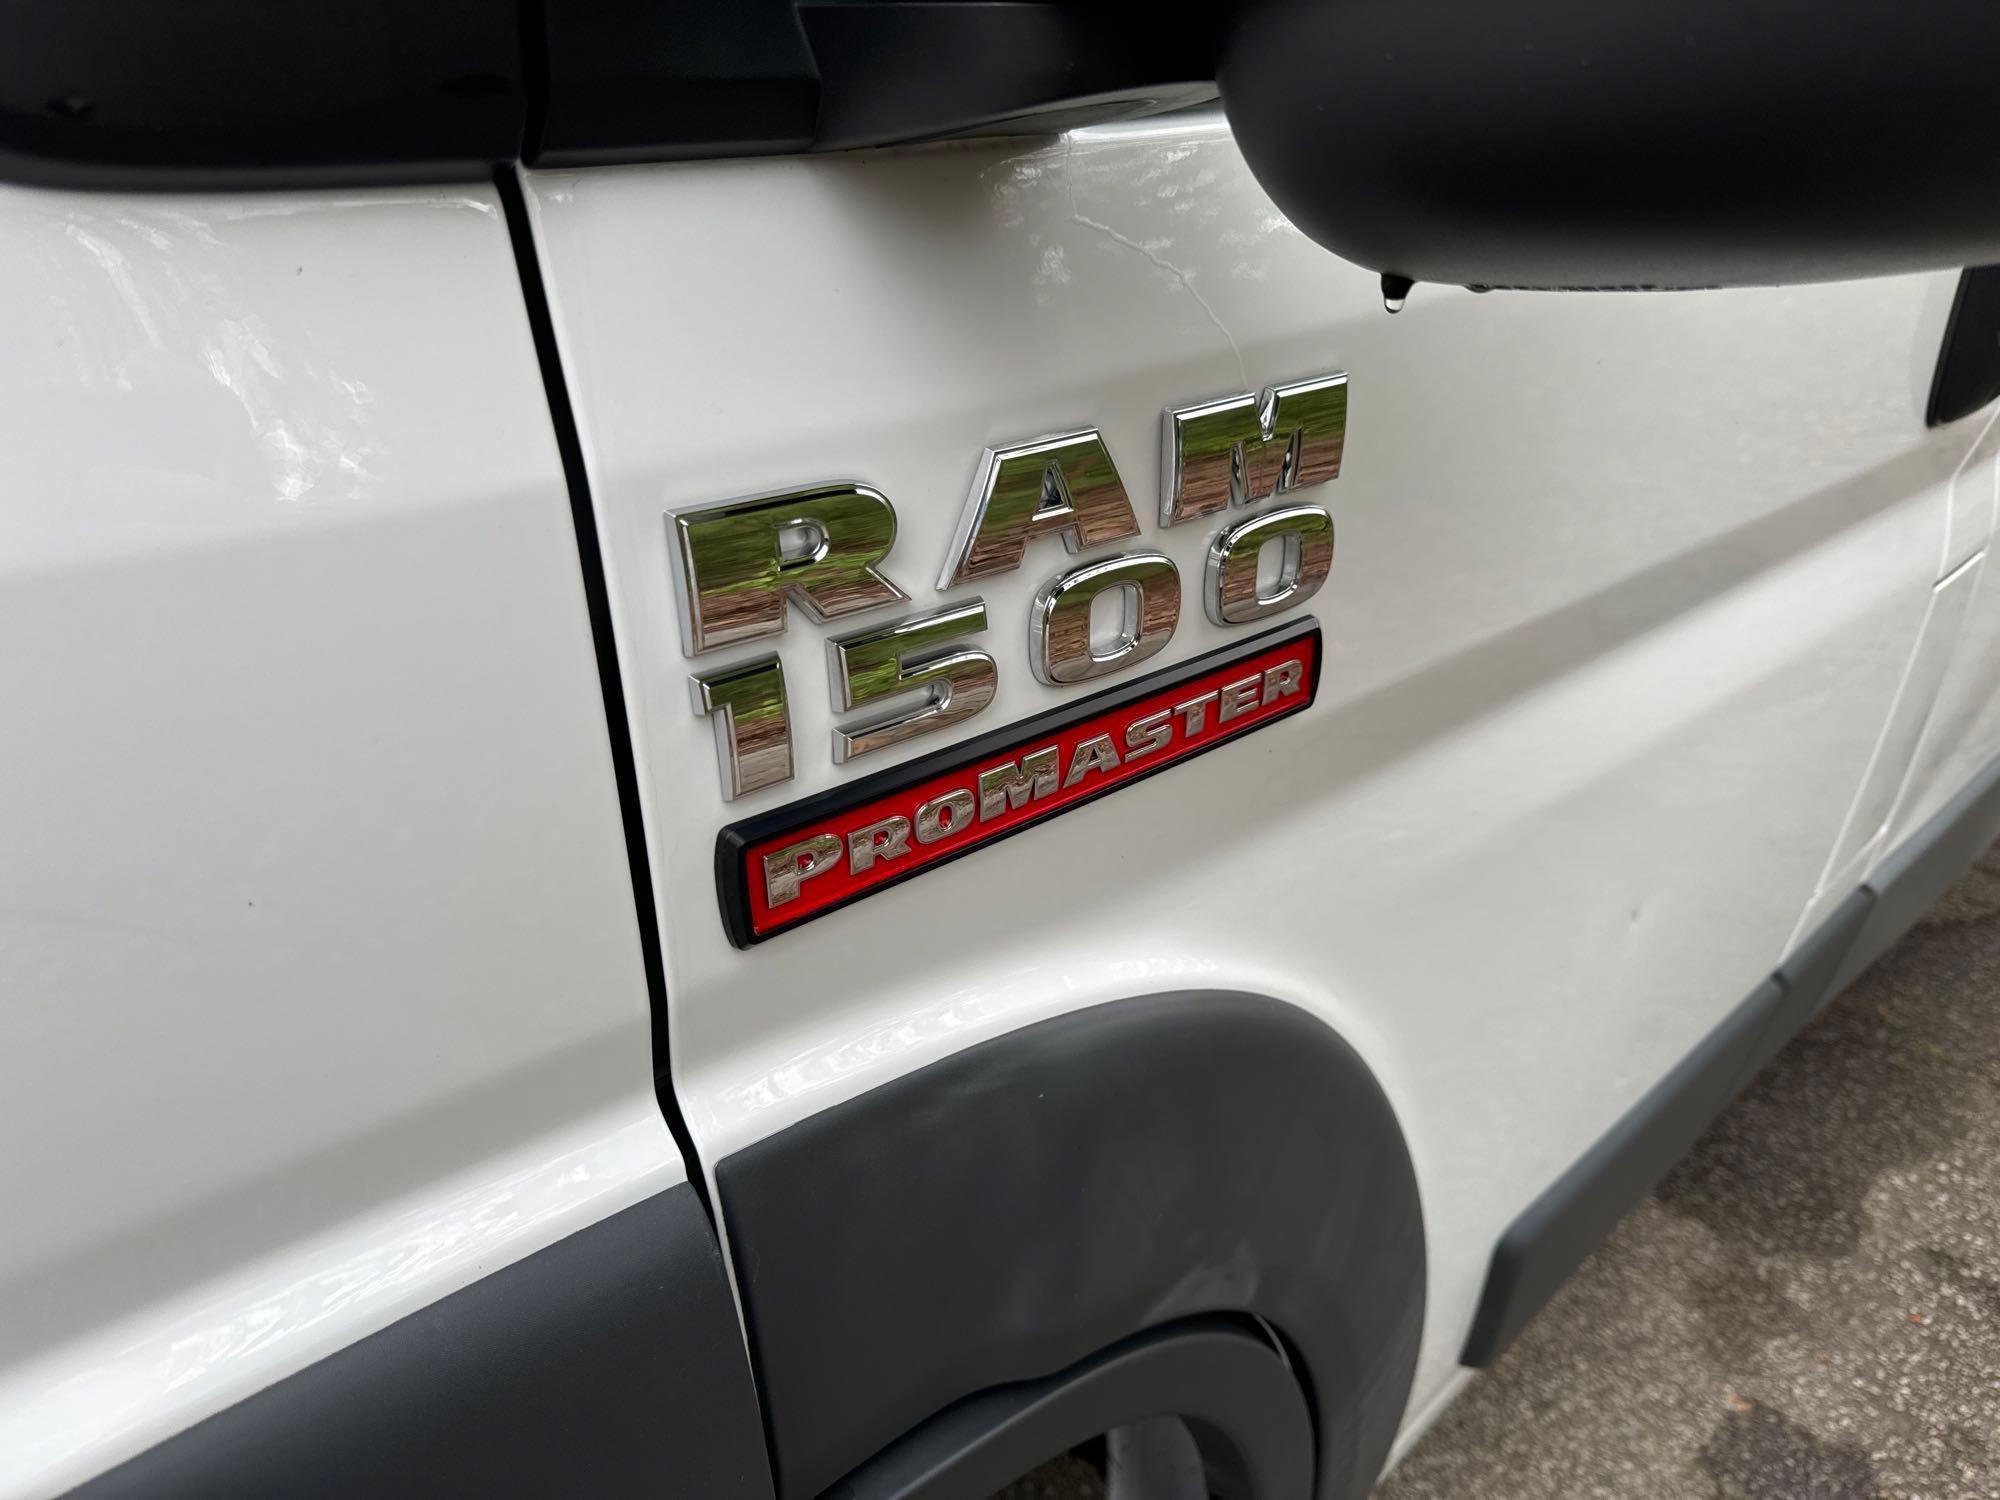 2017 Ram ProMaster 1500 Van, VIN # 3C6TRVAG6HE505627